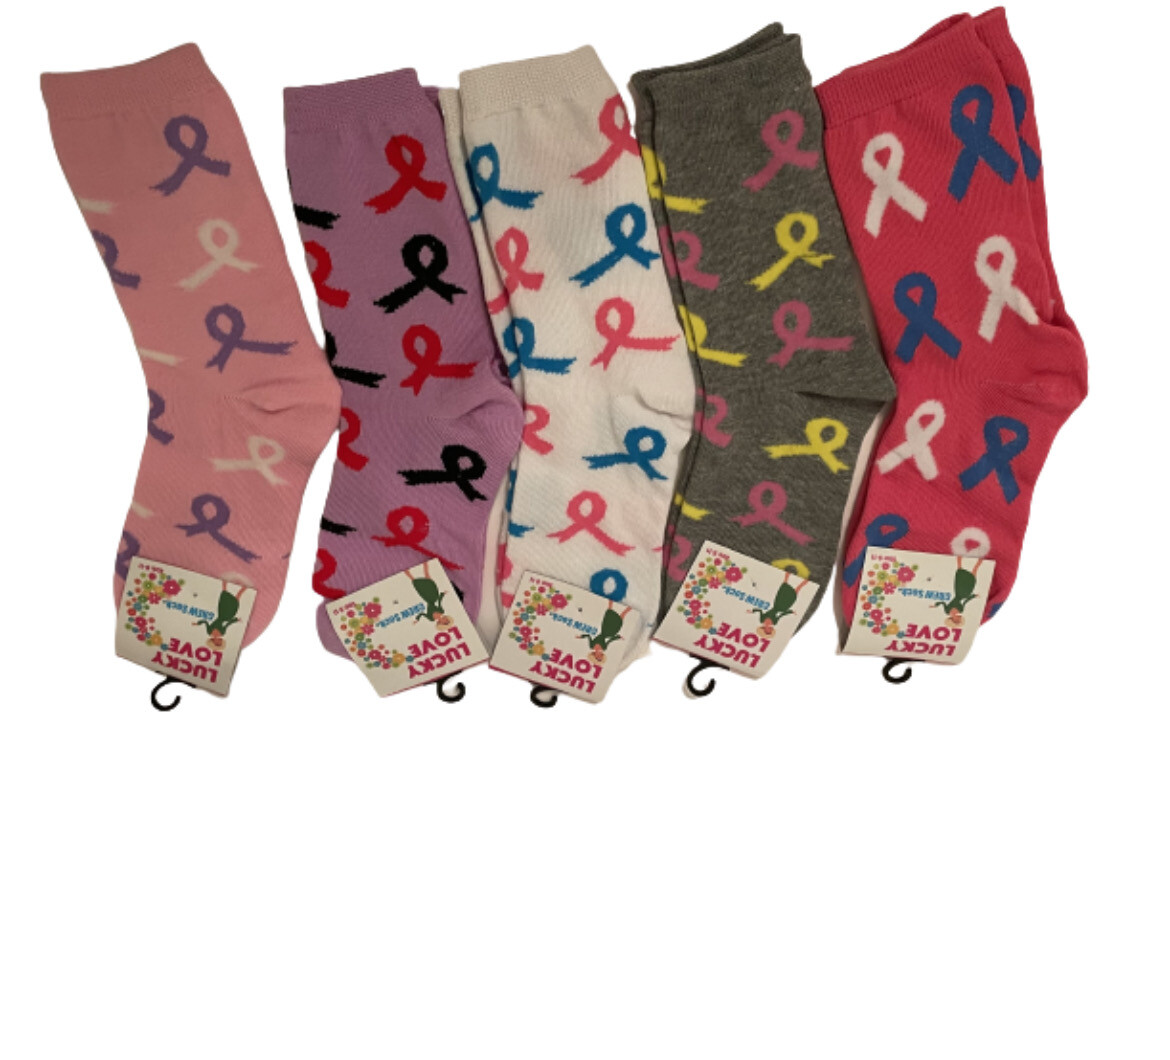 Cancer Awareness Socks